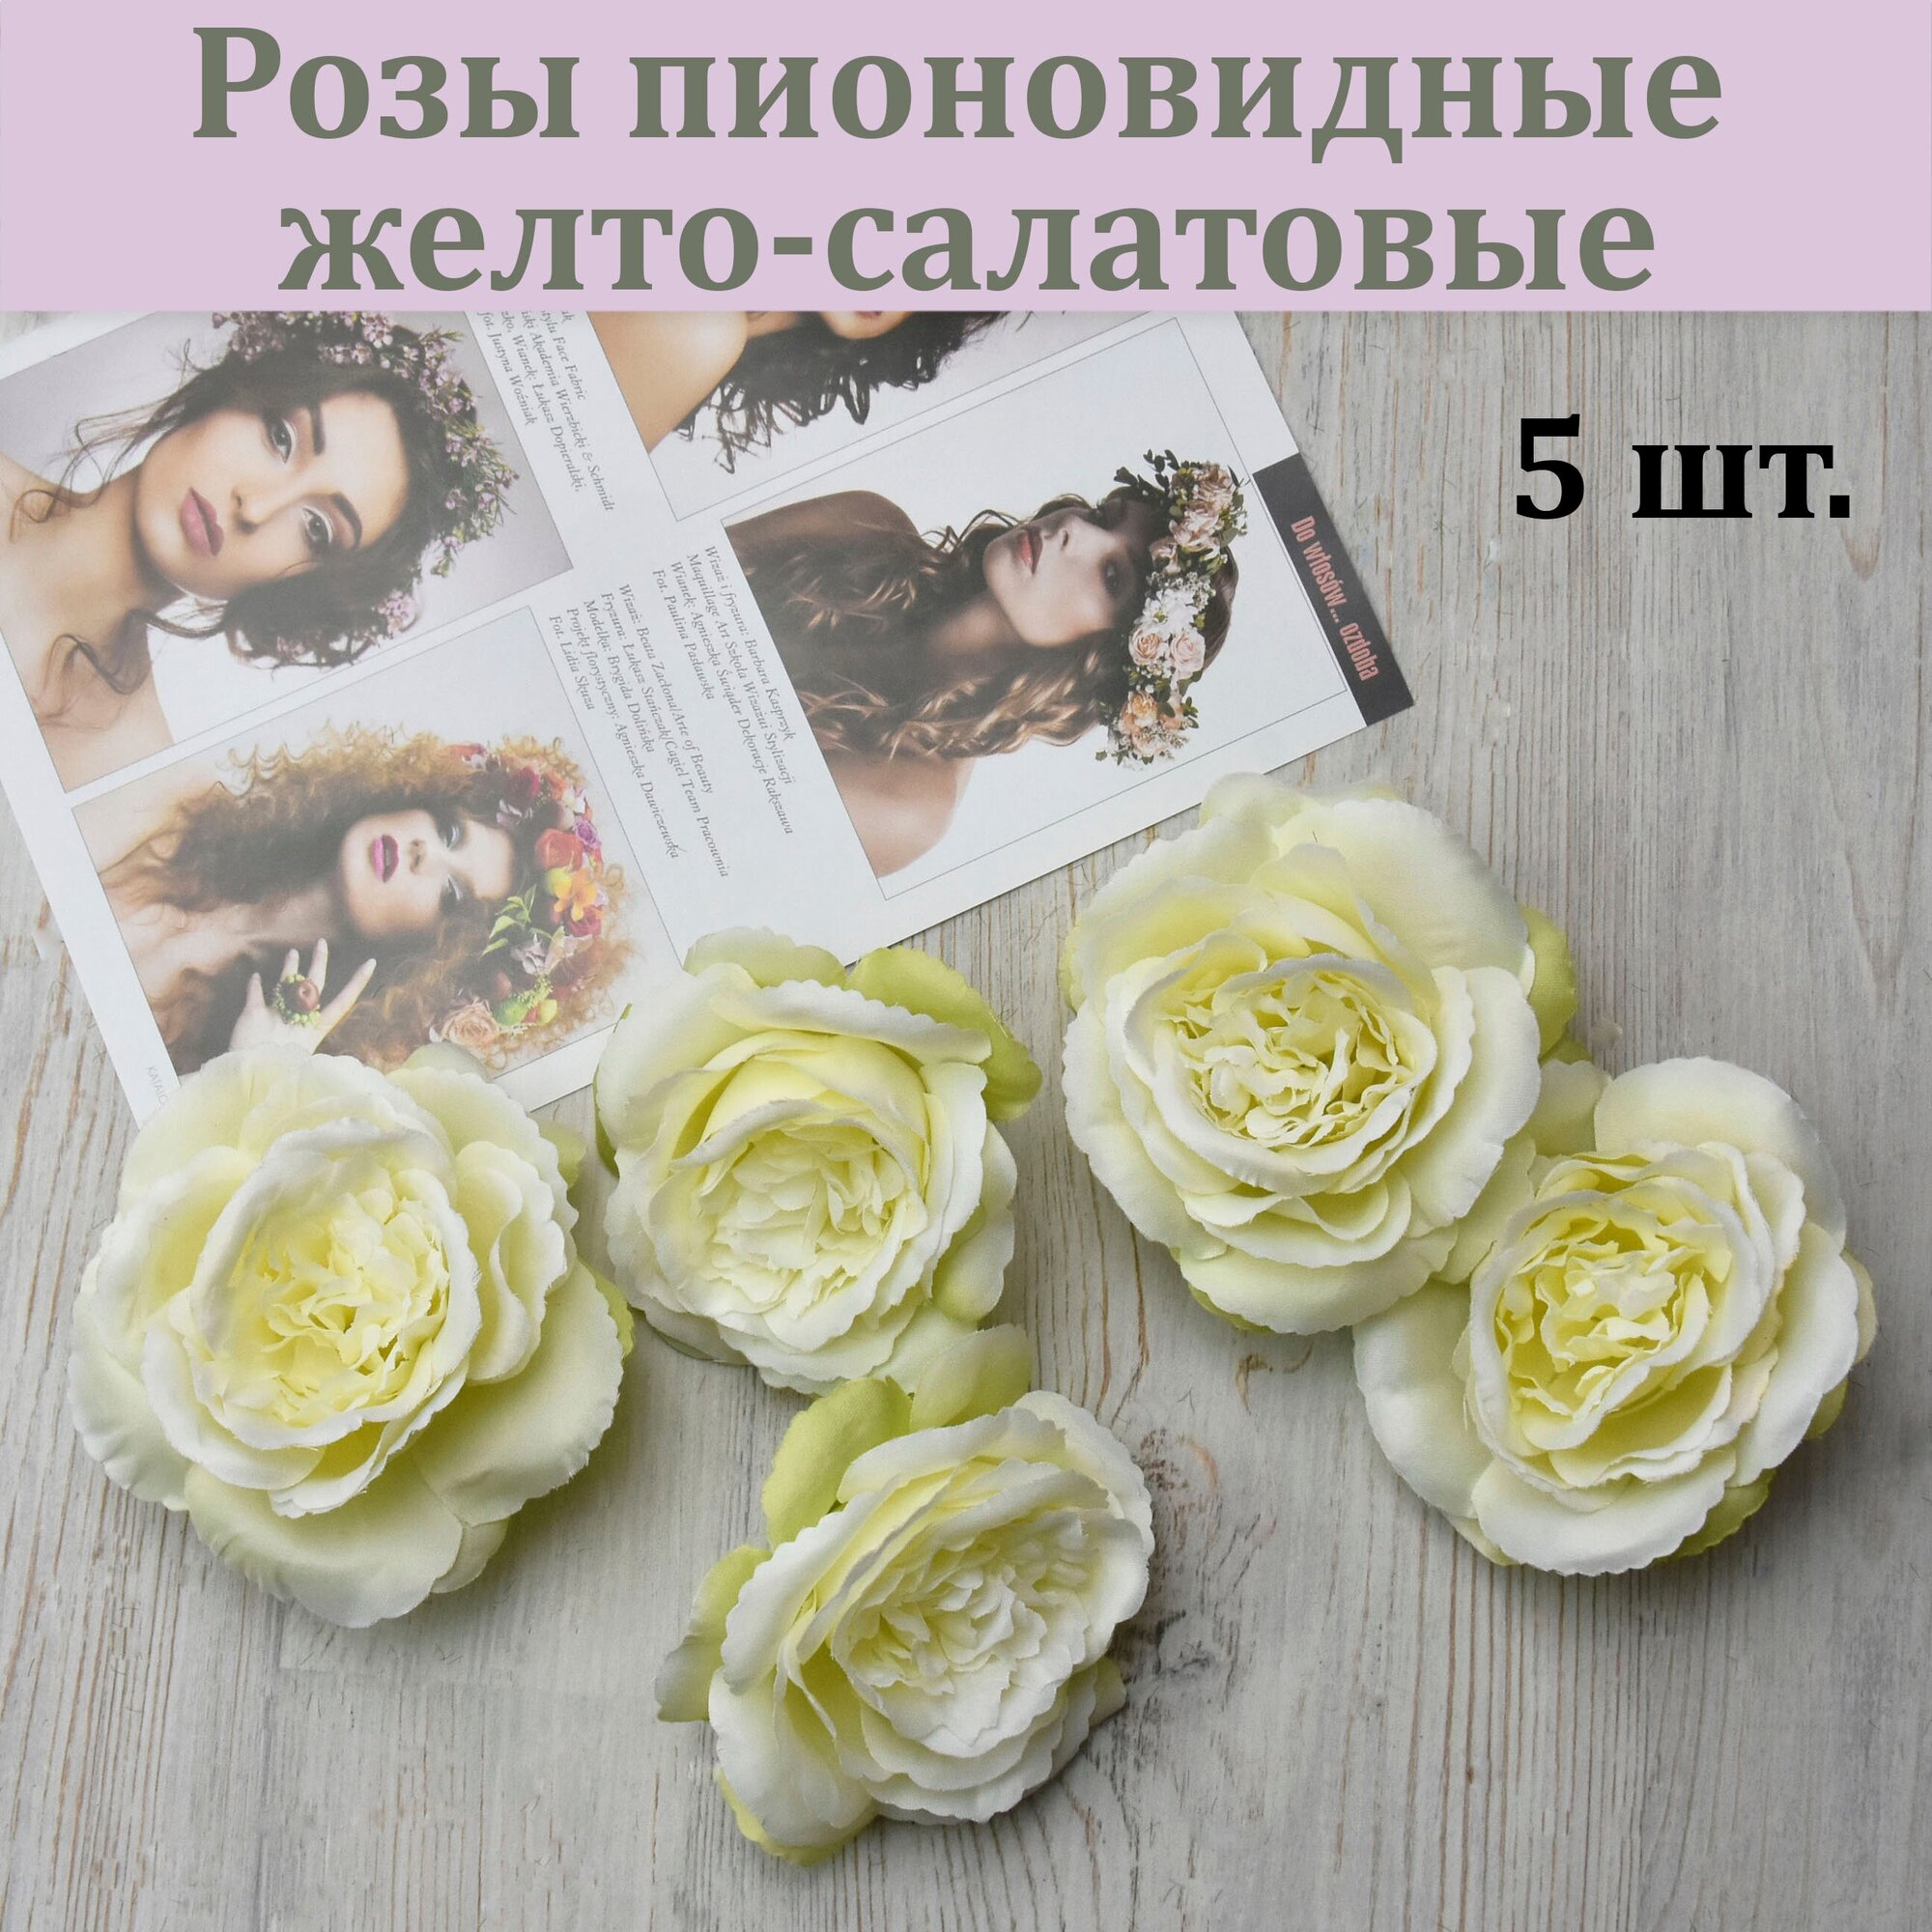 Бутон пионовидной розы желто-салатовой (5 шт.) / Розы для декора / Цветы для интерьера и творчества